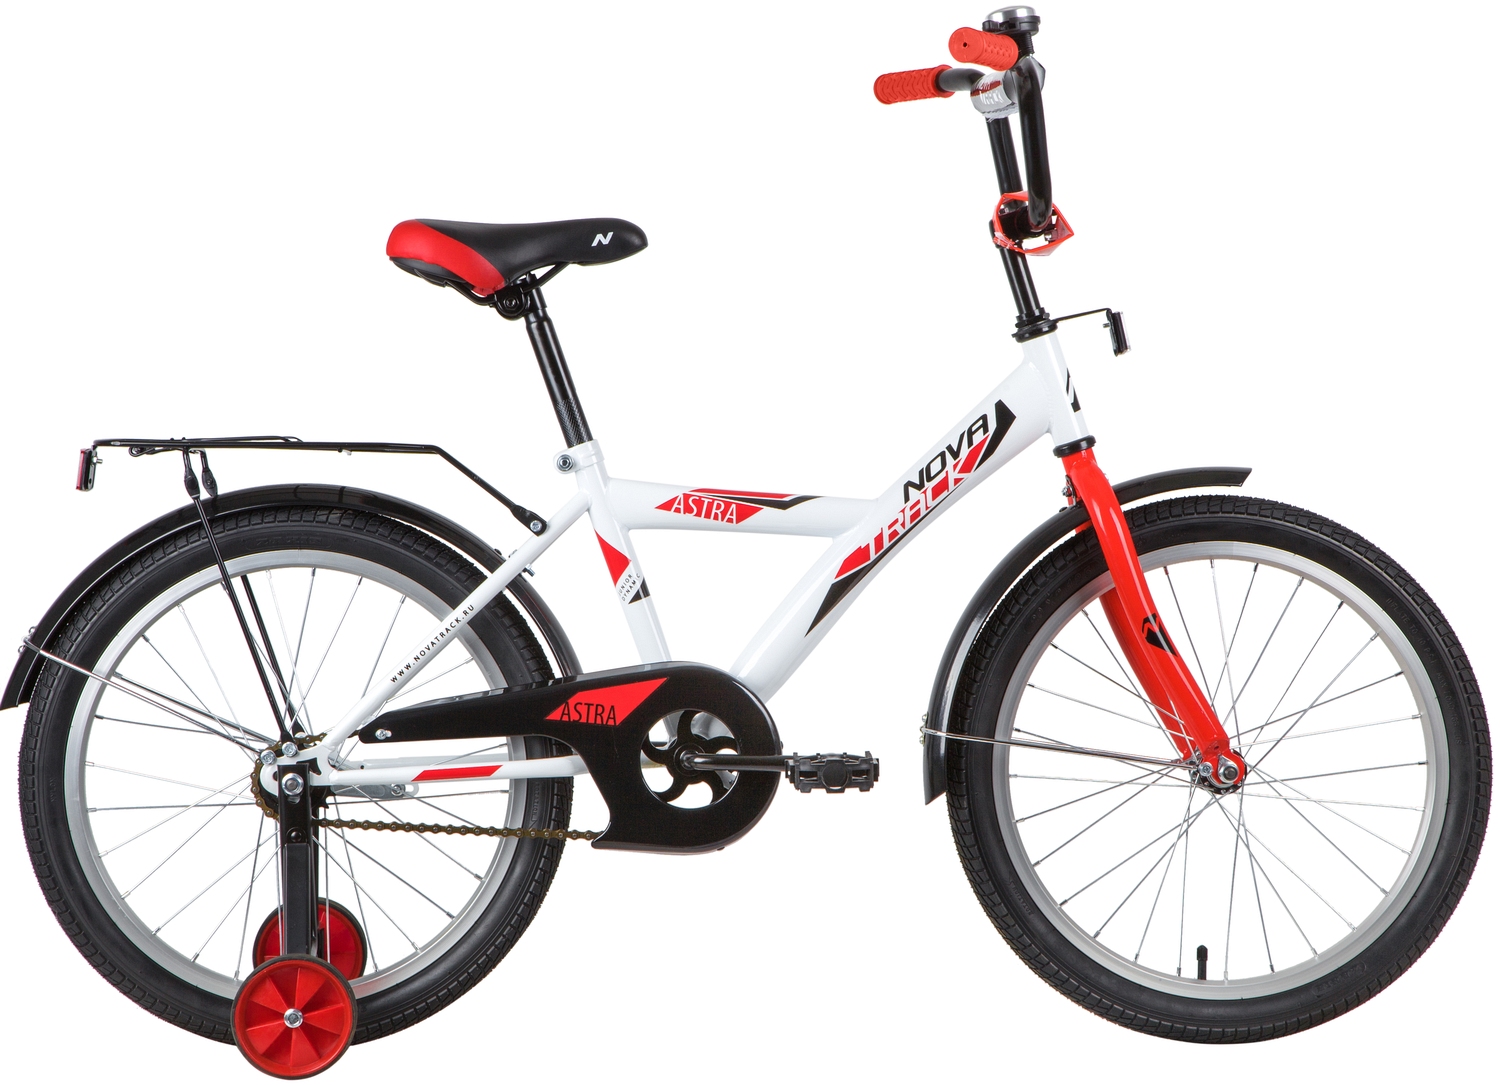  Отзывы о Детском велосипеде Novatrack Astra 20 2020